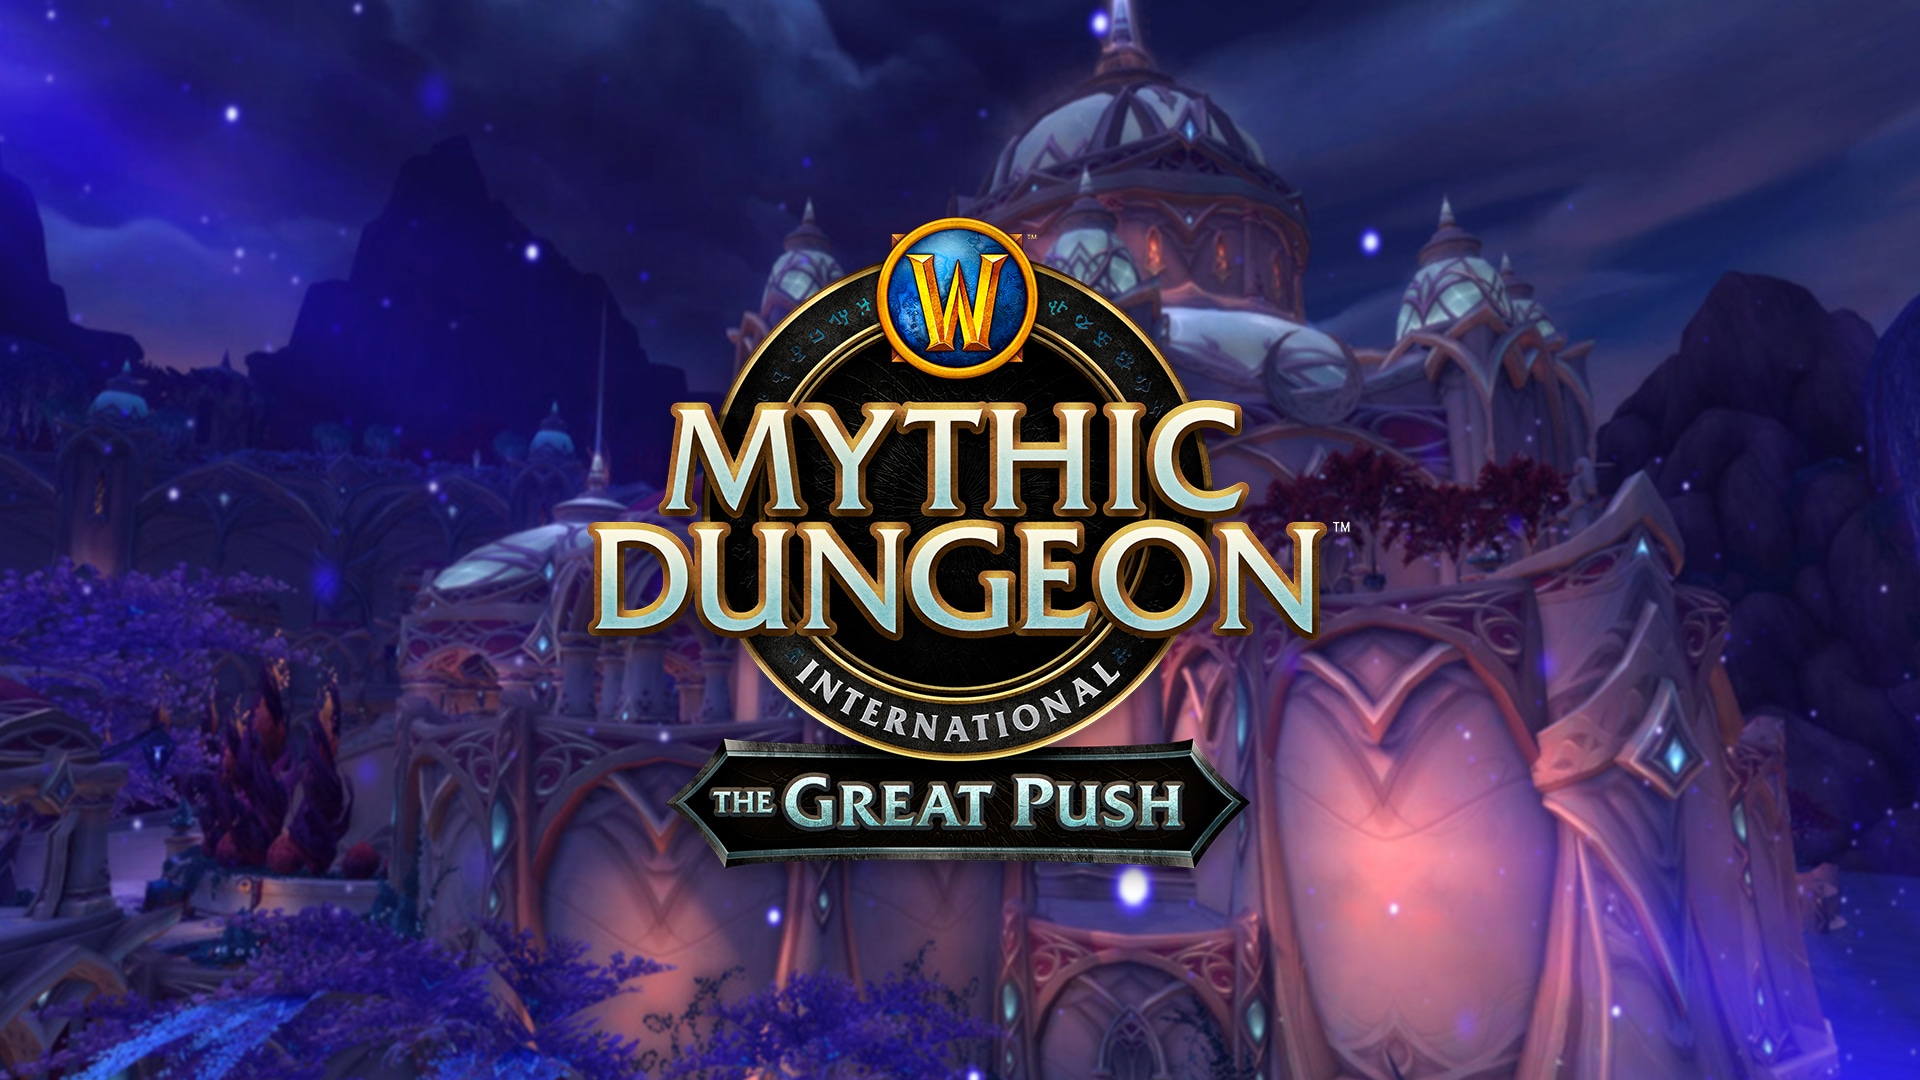 Saison 2 von The Great Push kommt in World of Warcraft!